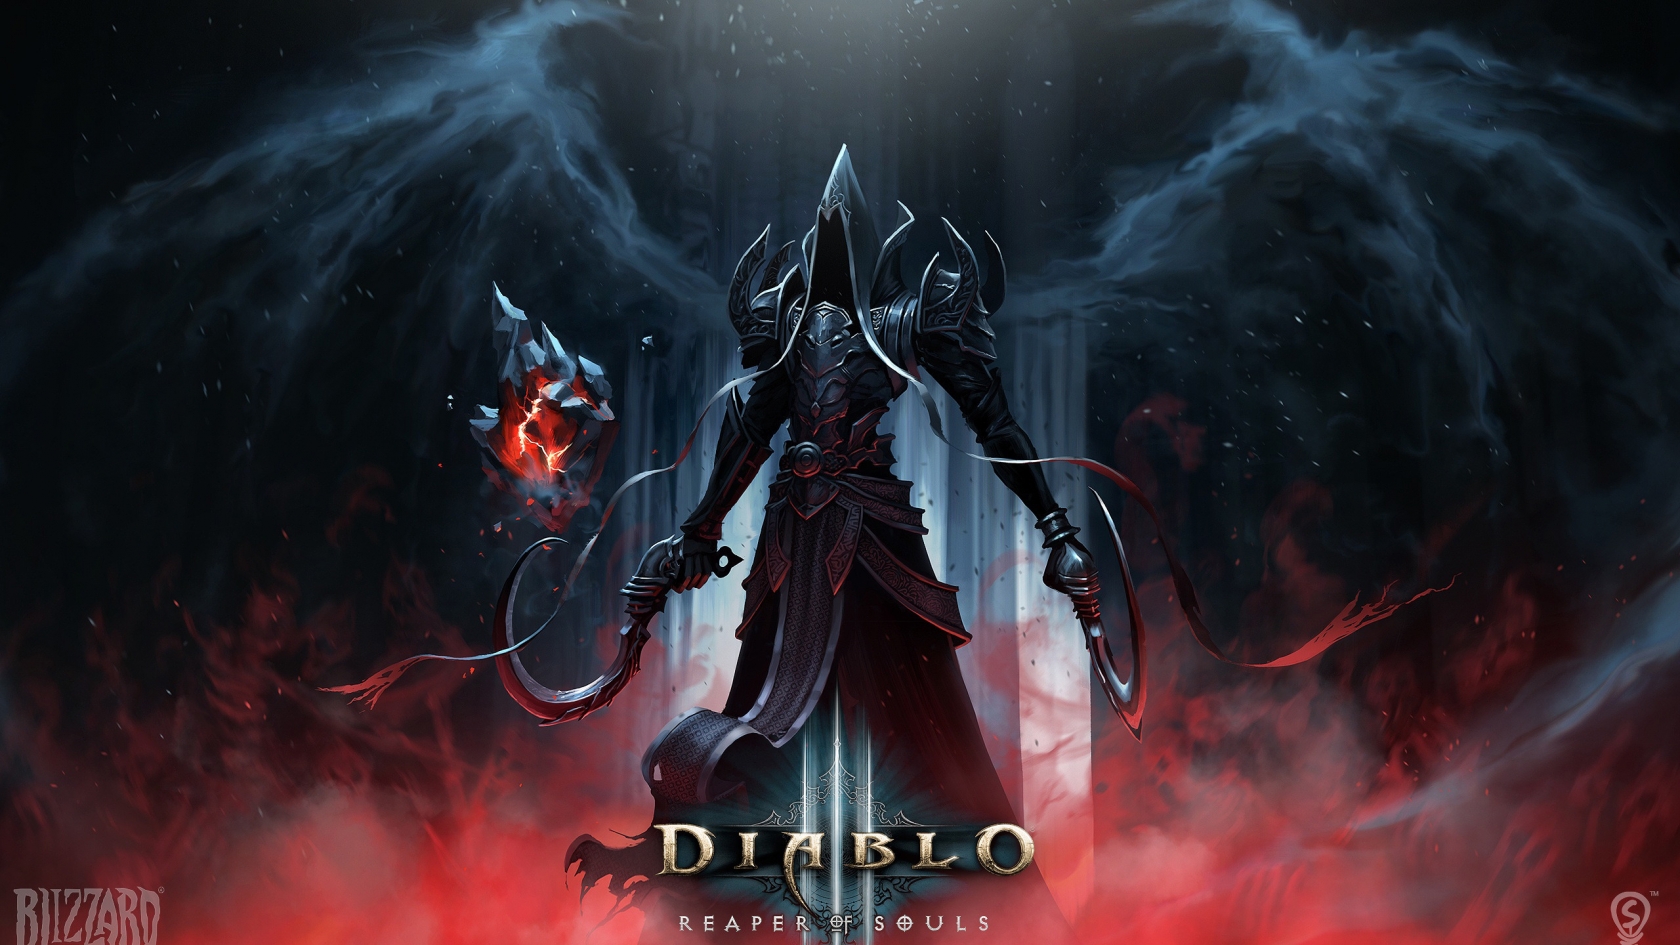 Diablo 3 Reaper of Souls for 1680 x 945 HDTV resolution